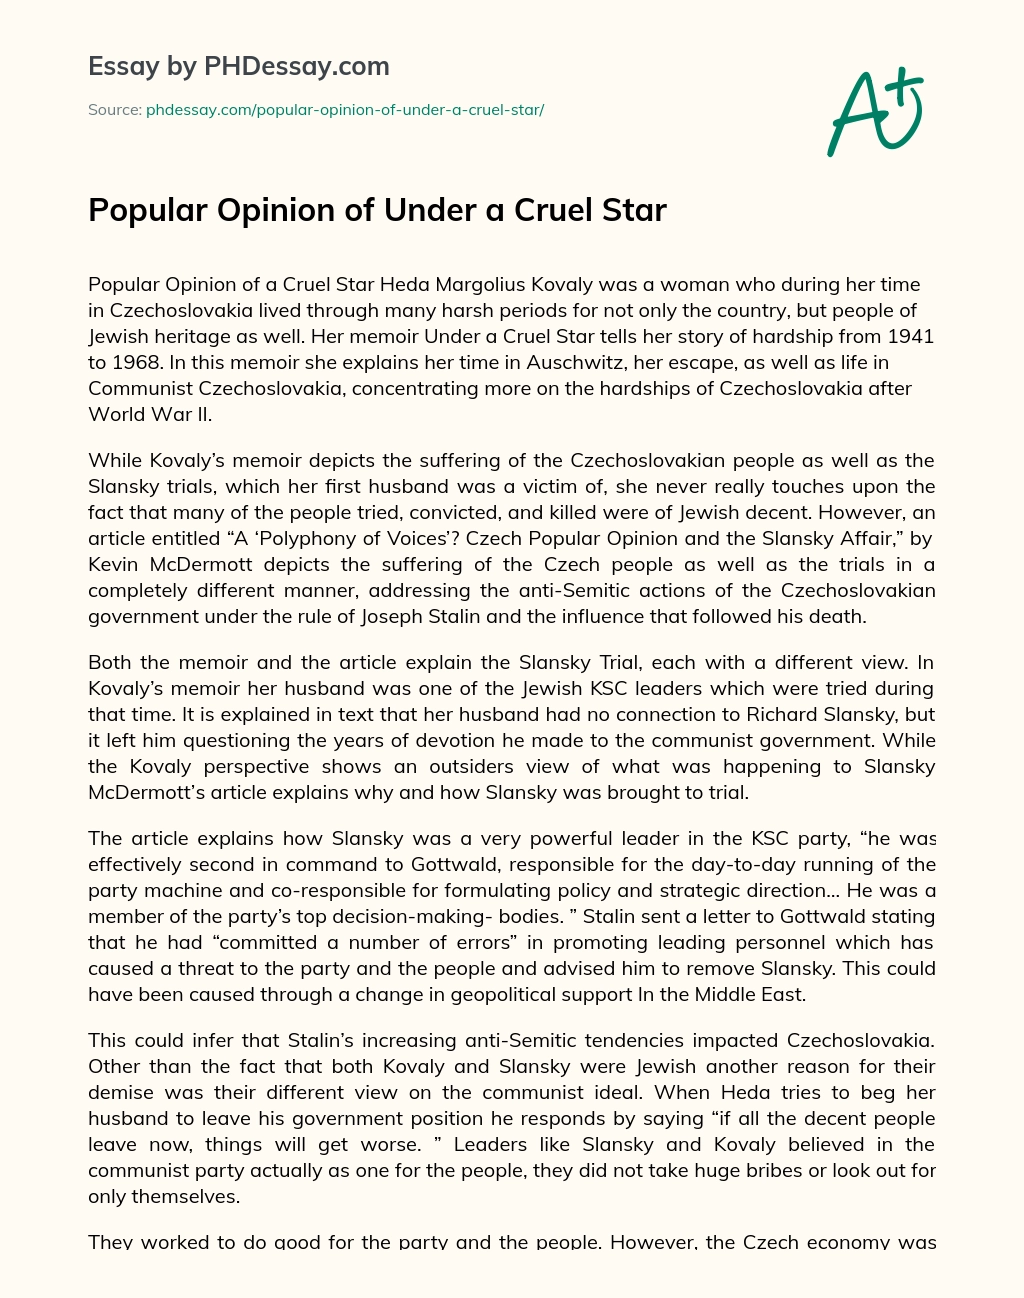 Popular Opinion of Under a Cruel Star essay